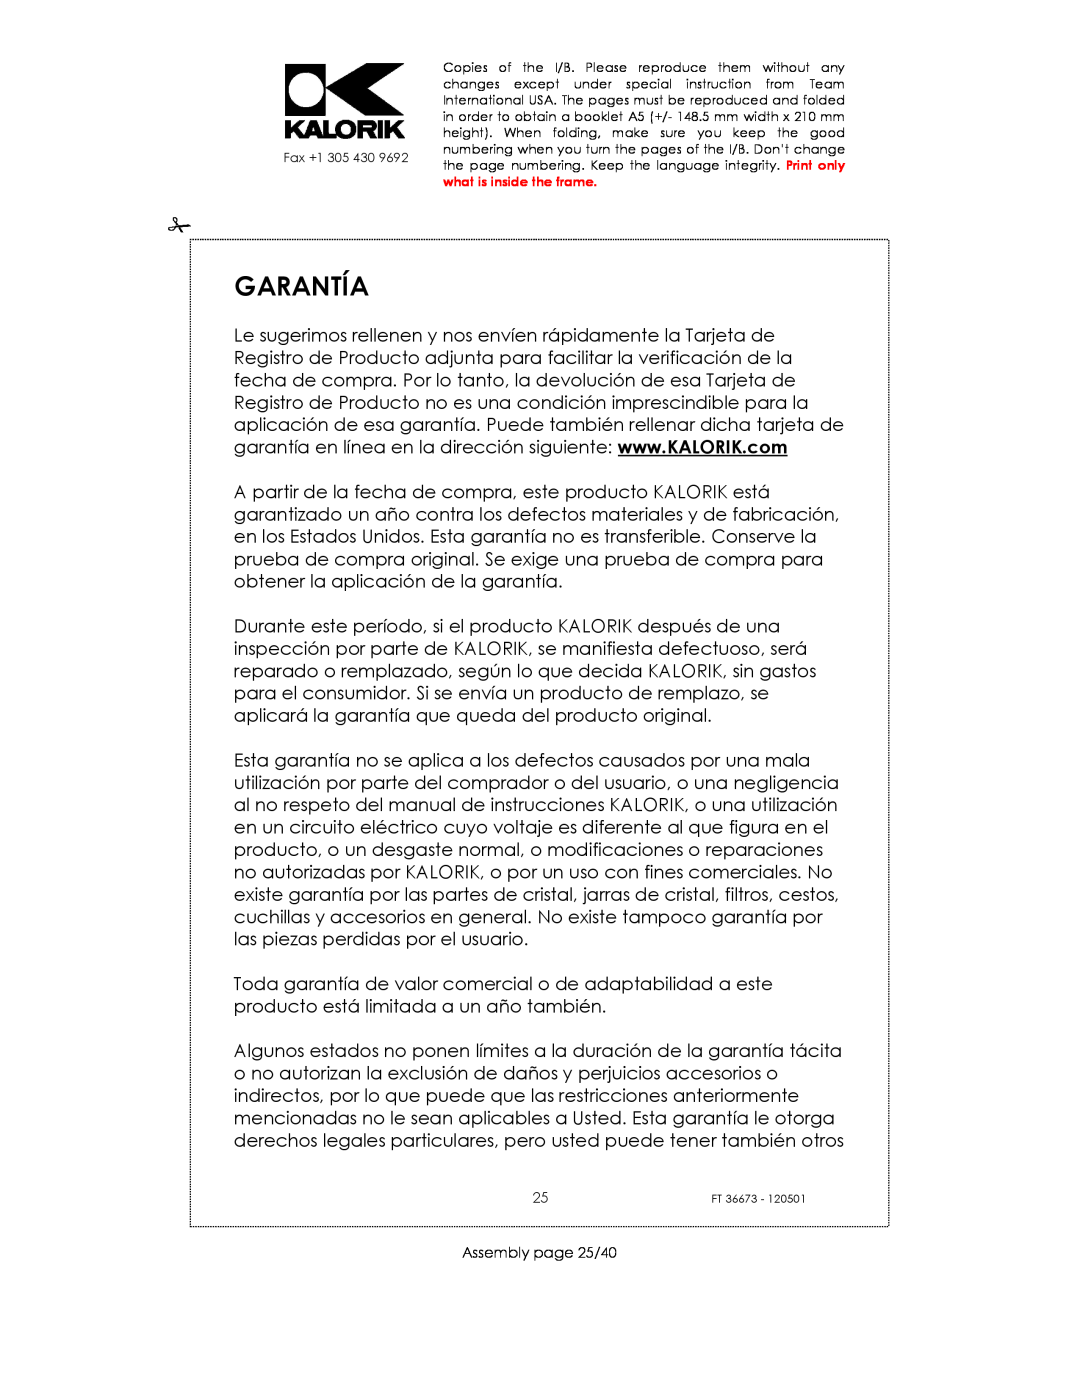 Kalorik USK FT 36673 manual Garantía, Assembly page 25/40 